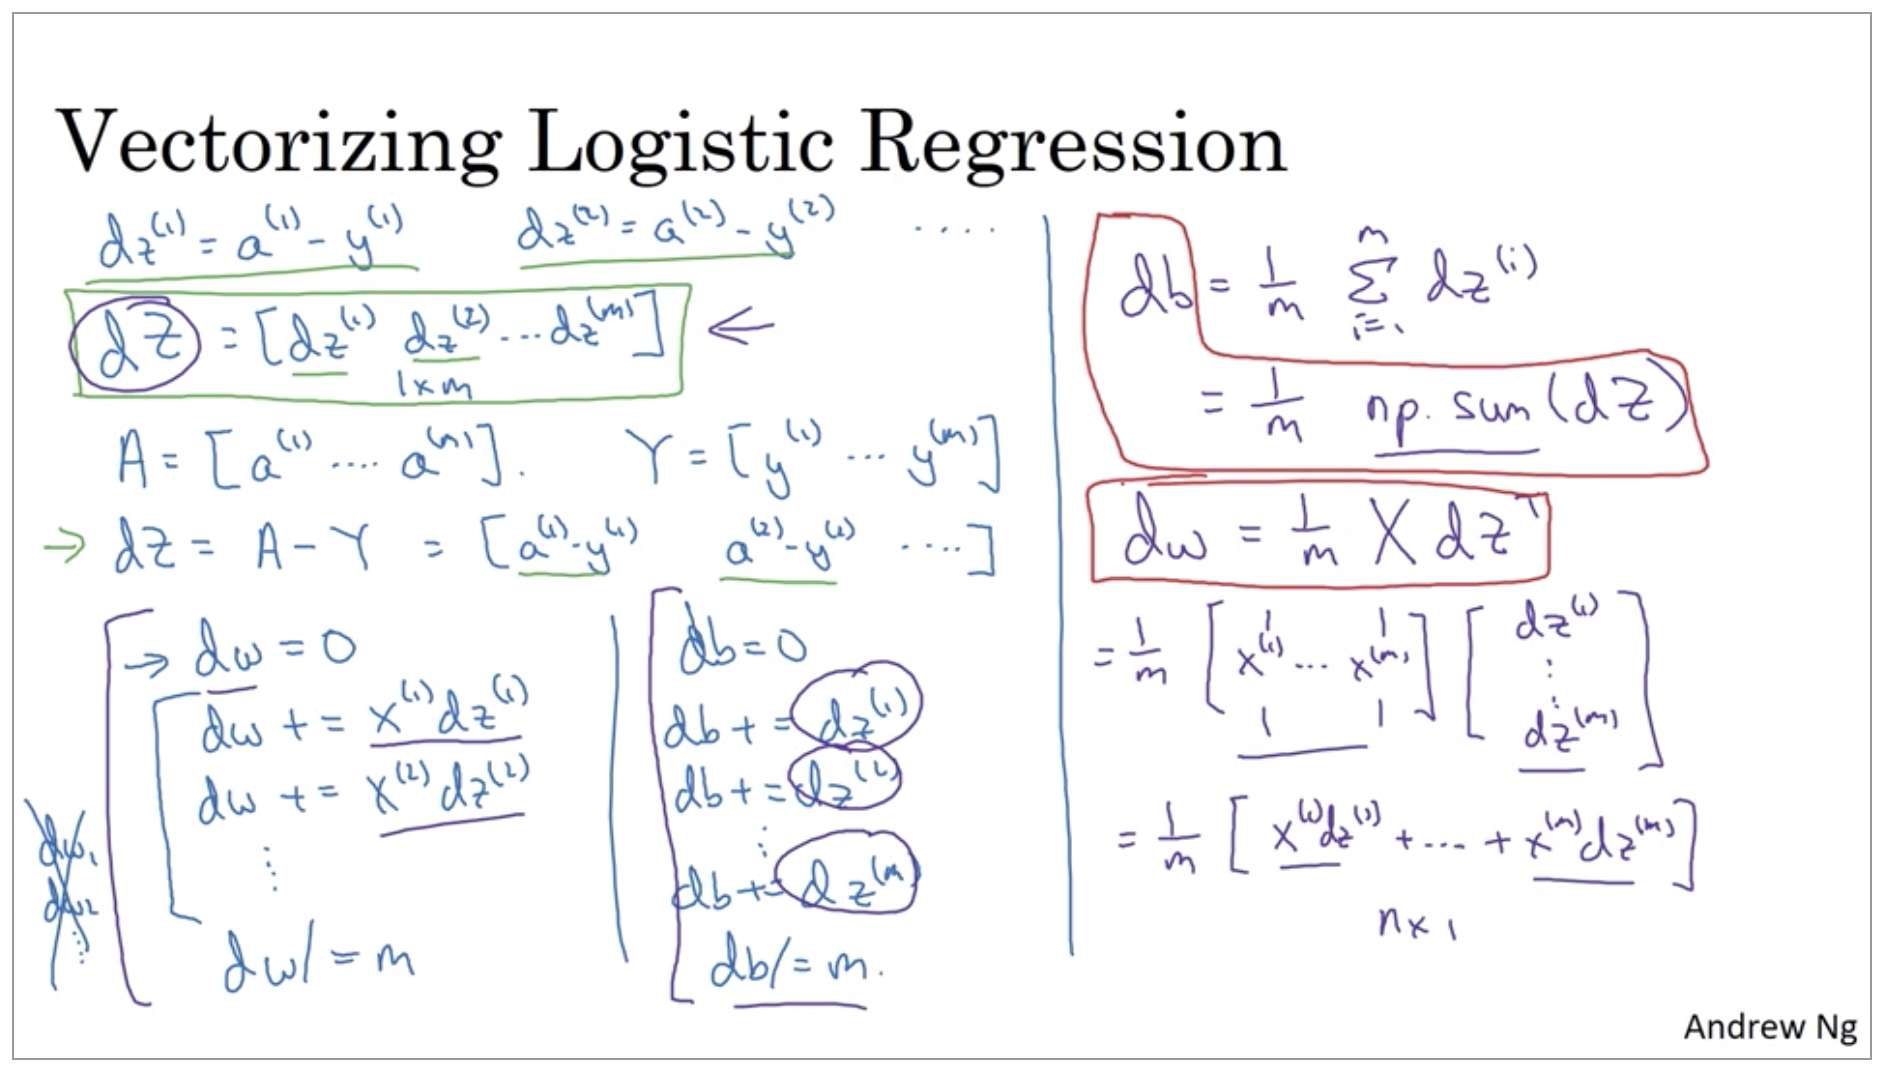 vectorizing-logistic-regression-2.png